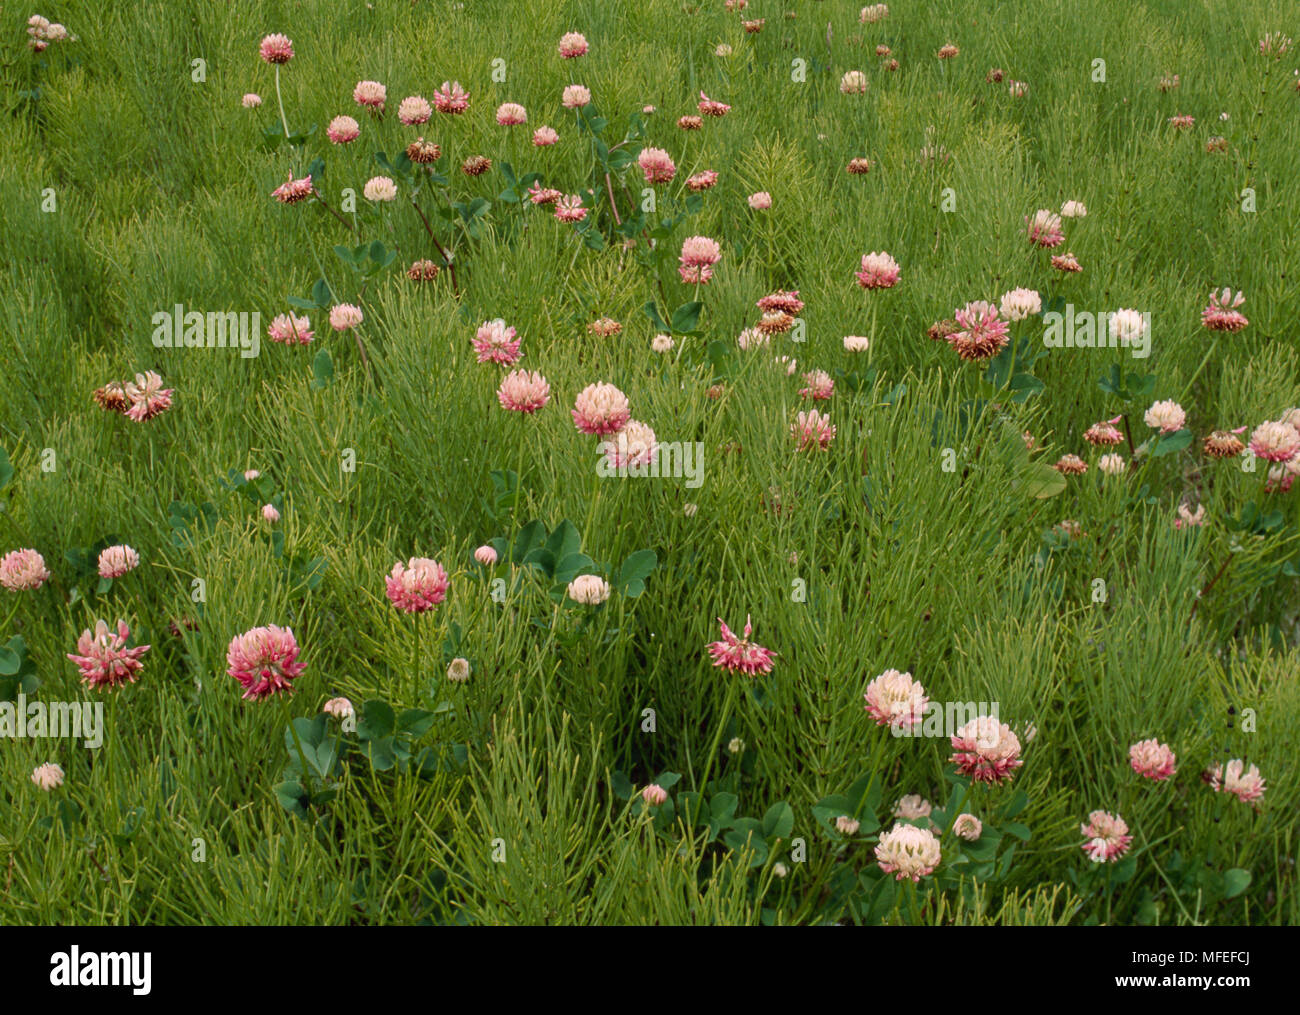 CLOVER Trifolium sp. growing admist Horsetail Equisetum sp. Alberta, Canada. Stock Photo